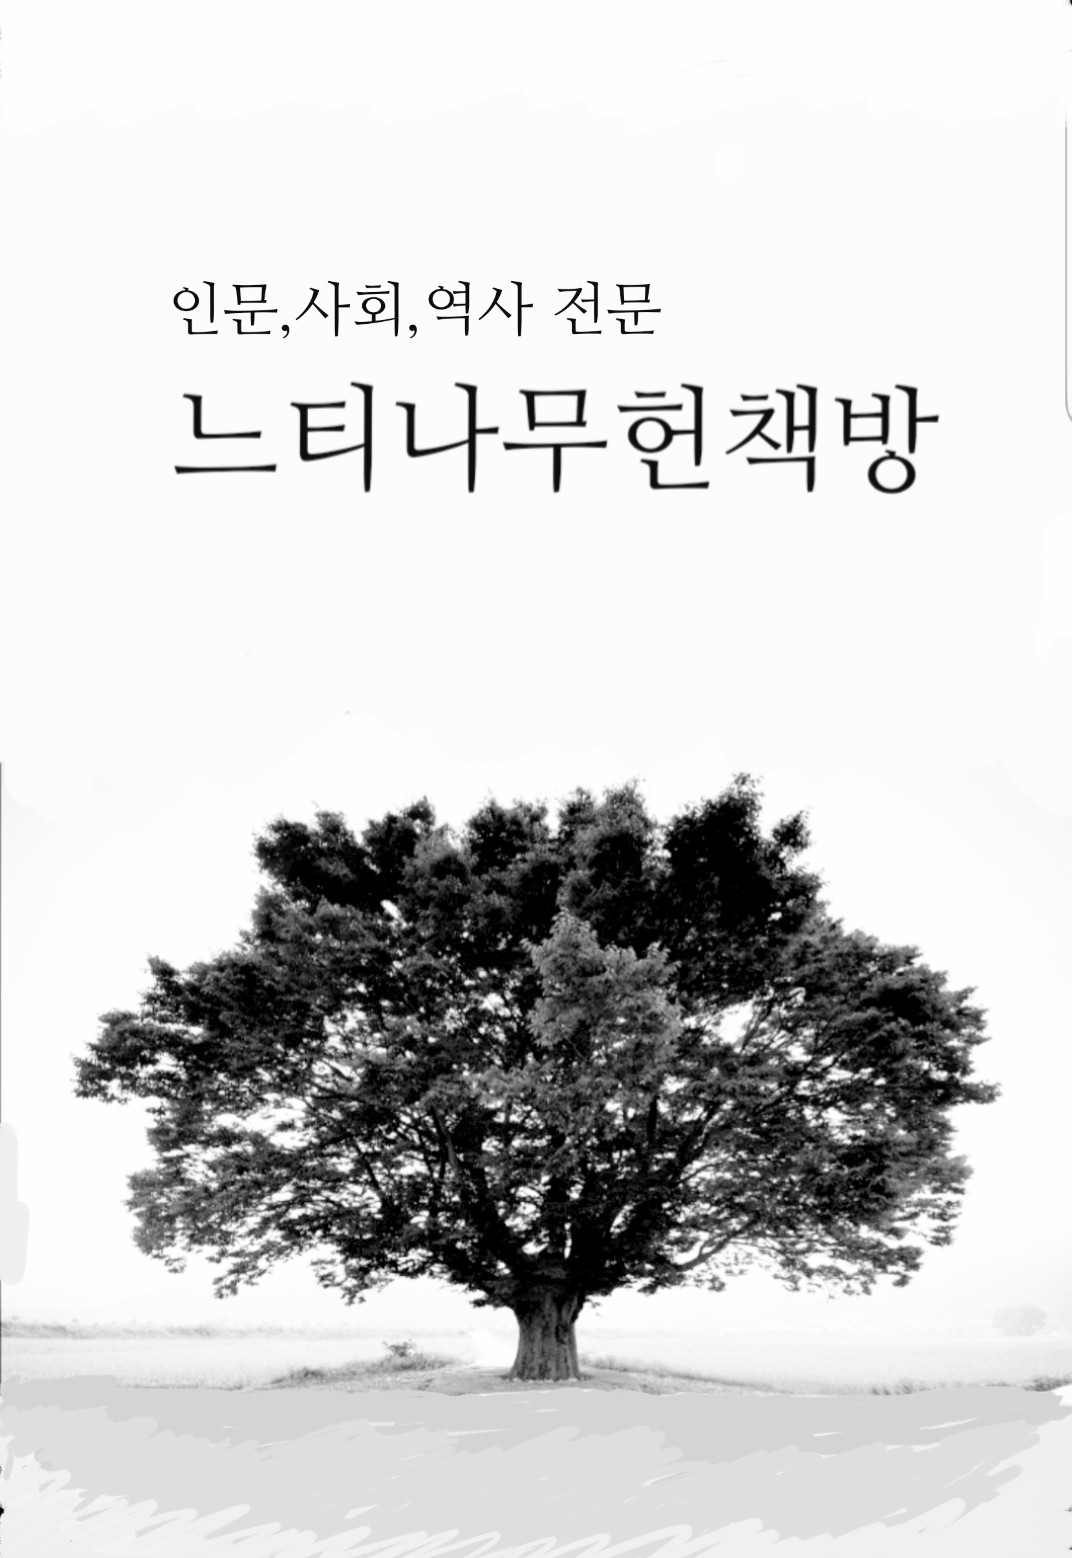 거대한 뿌리 - 향토와 문화 16 - 대구경북 근현대 미술사탐방 (특6코너)